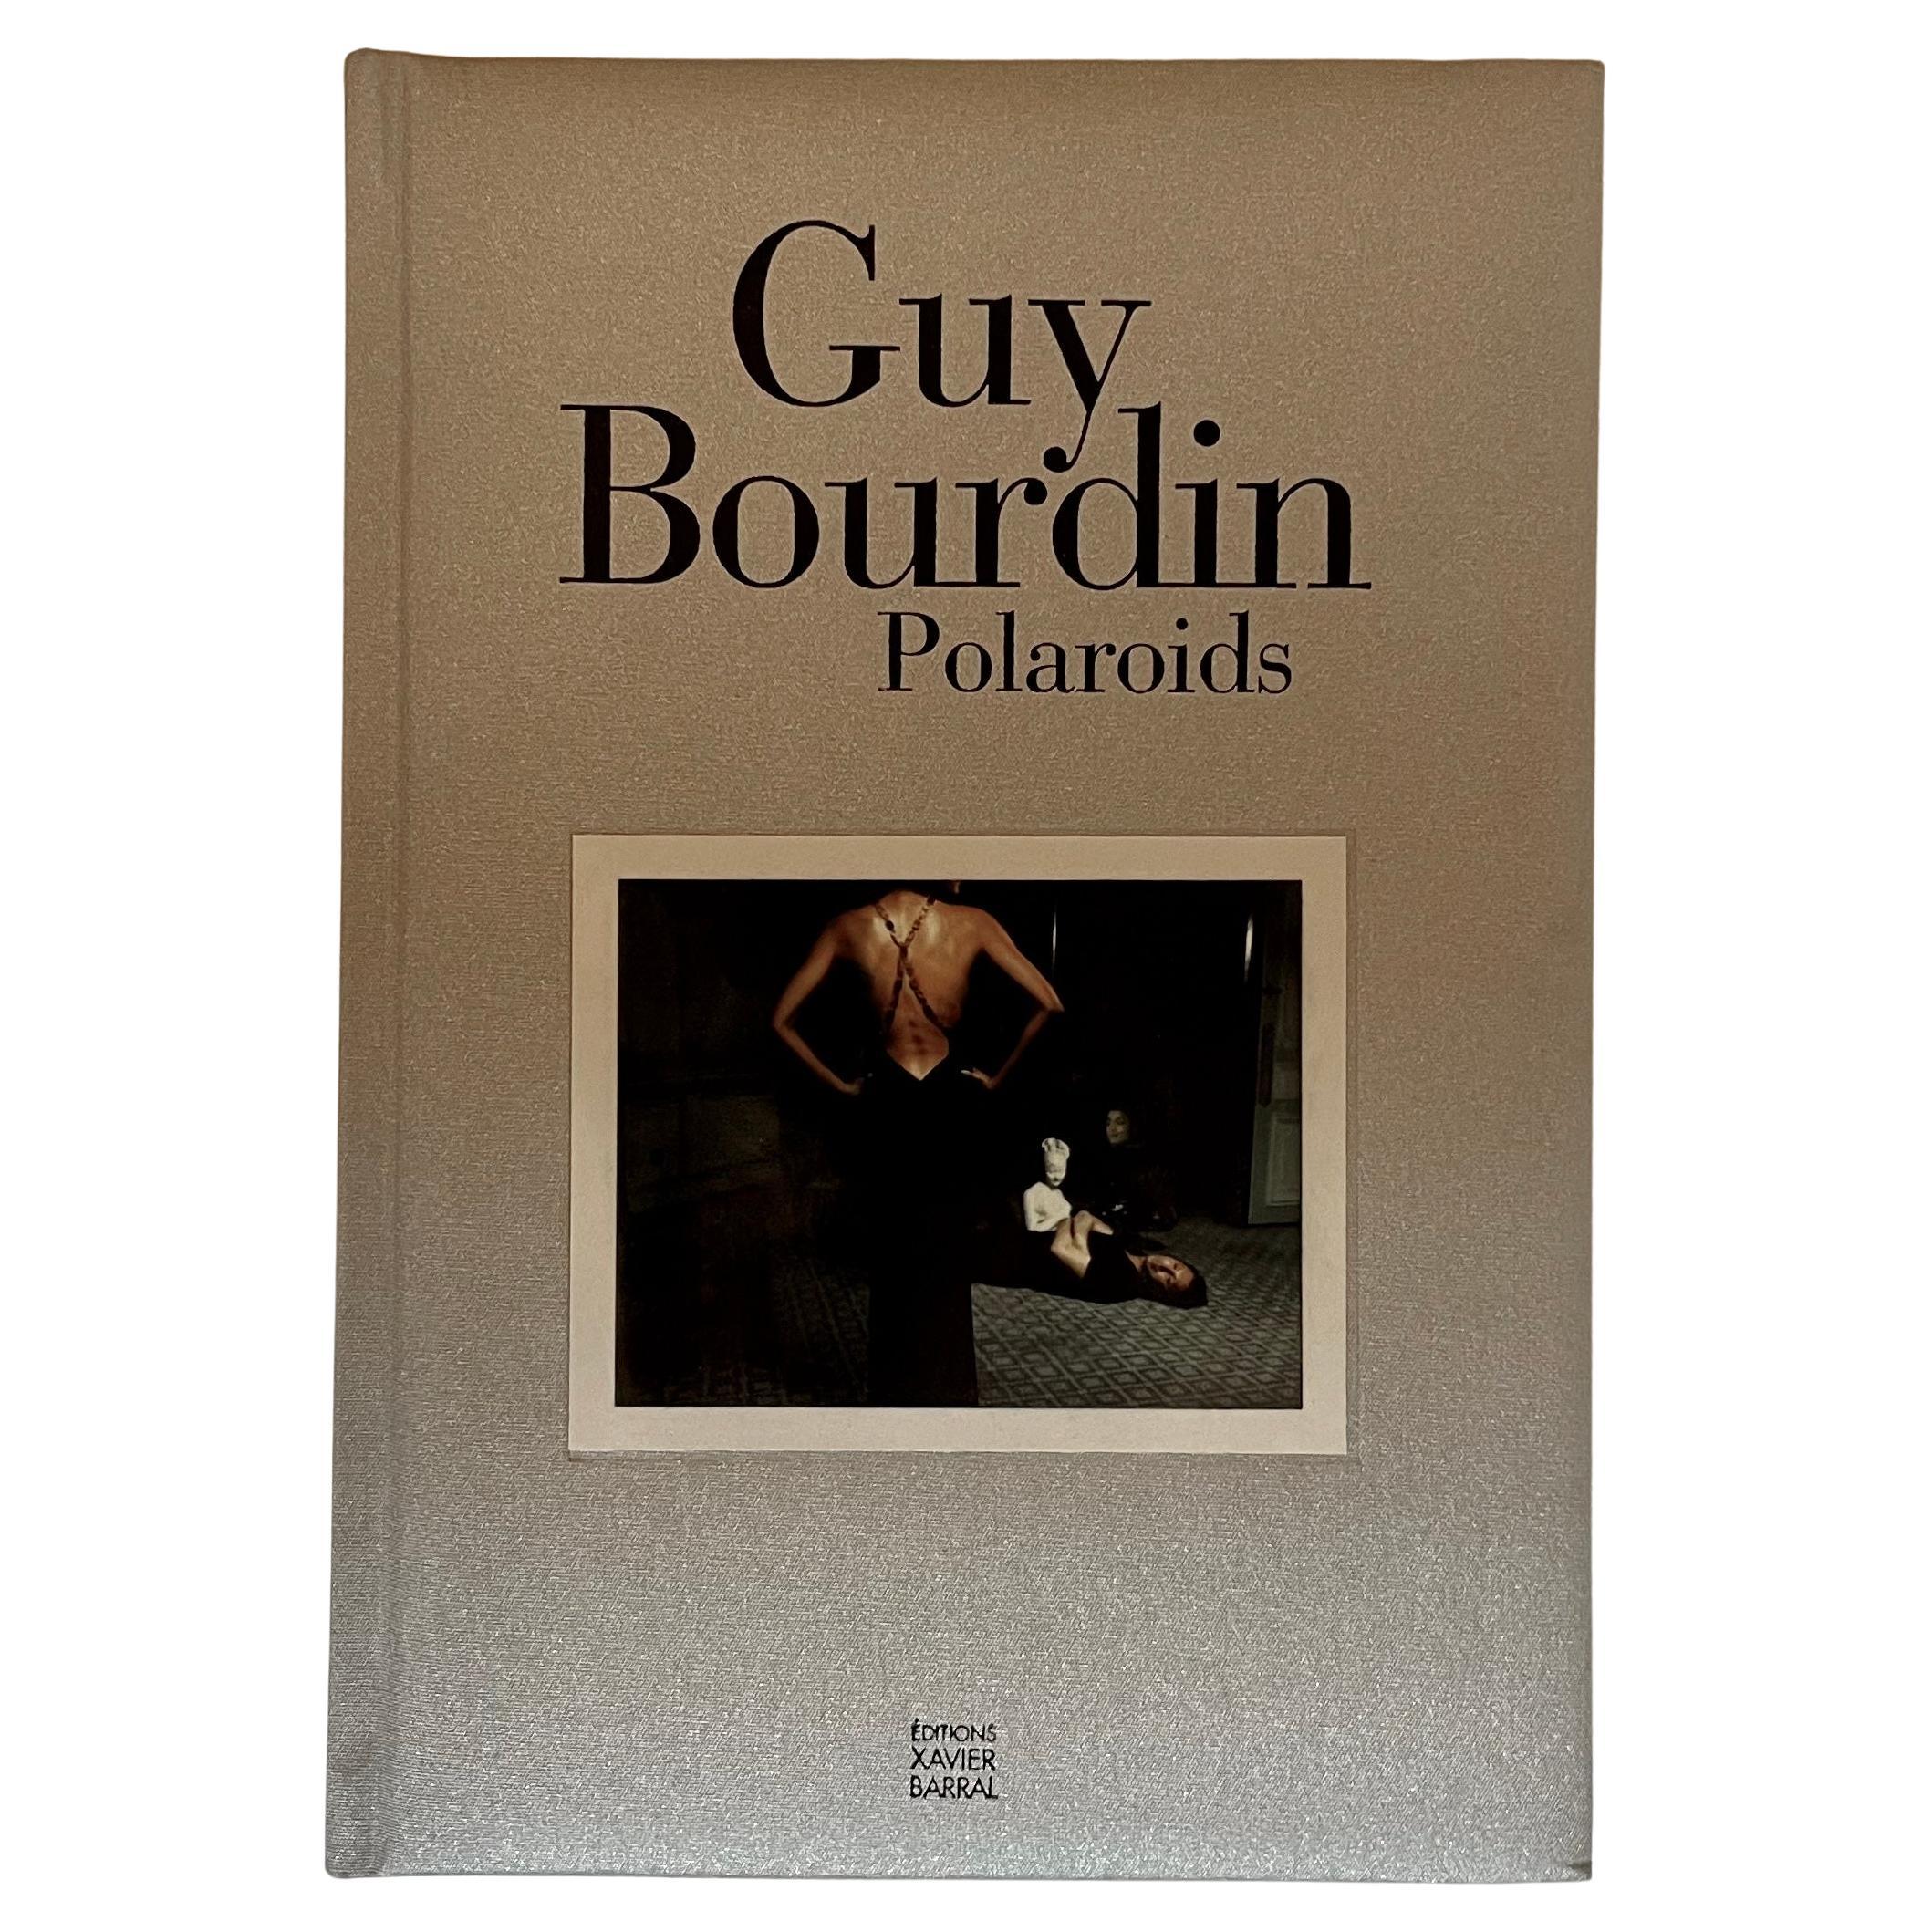 Polaroids, Guy Bourdin, Éditions Xavier Barral, Paris, 2005